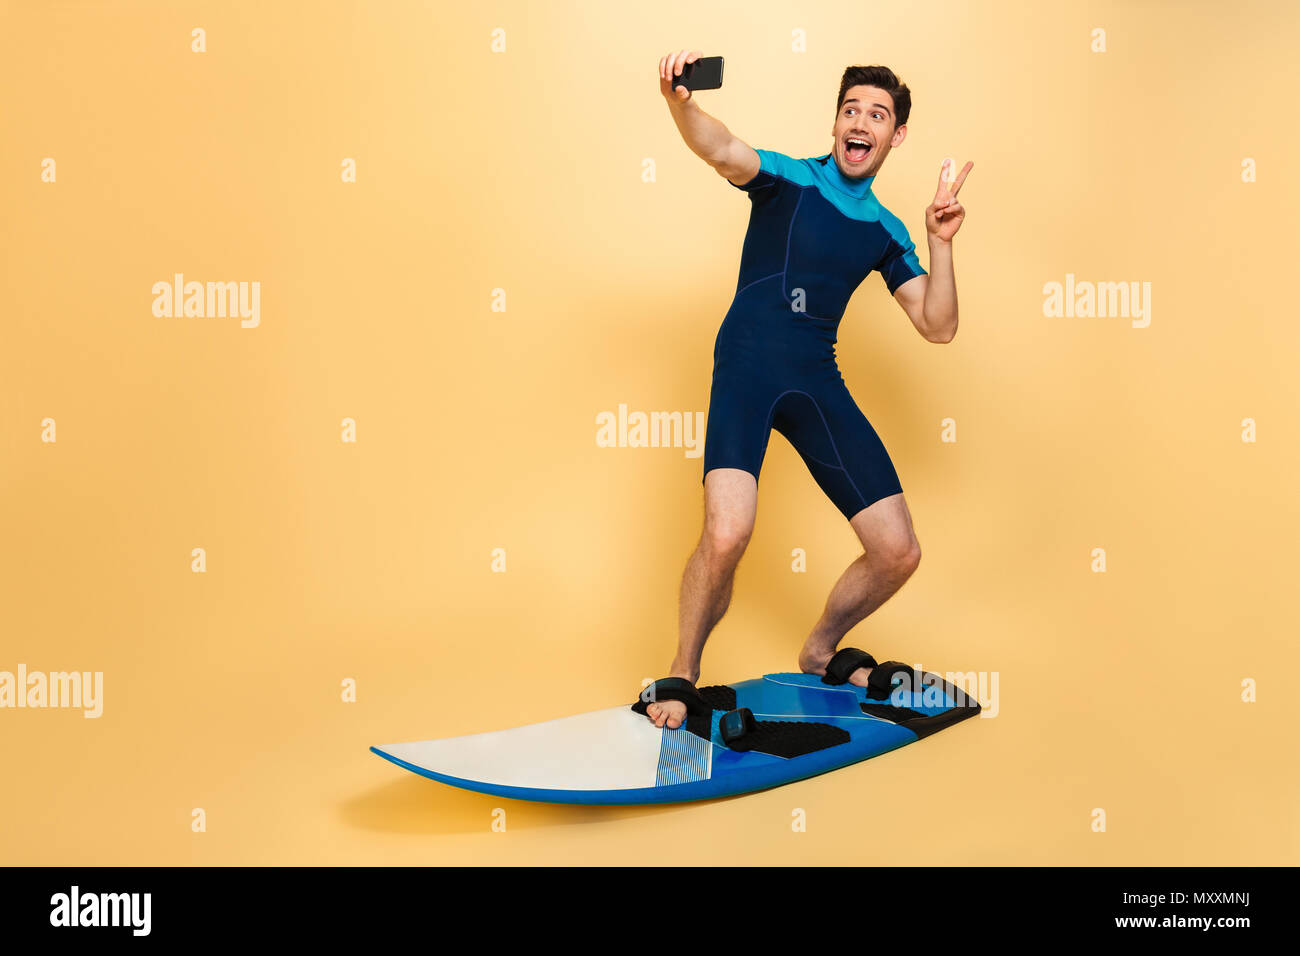 In voller Länge Porträt von einem freundlichen jungen Mann in Badeanzug ein selfie gekleidet beim Surfen auf einem Brett über Gelb Hintergrund isoliert Stockfoto